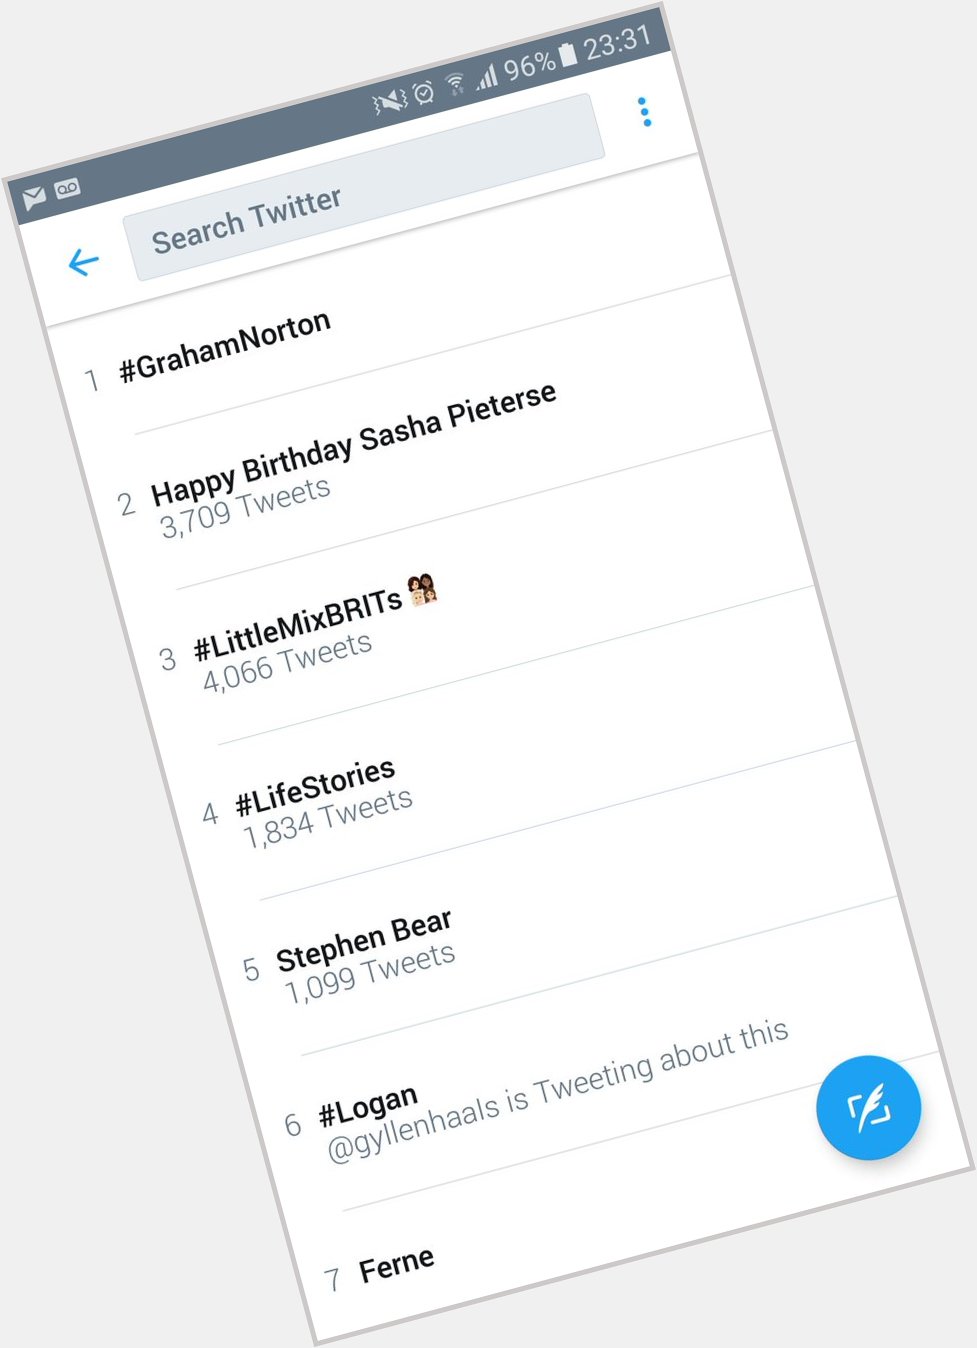  Hey Look what\s trending Right Now!!  Happy Birthday Sasha Pieterse 